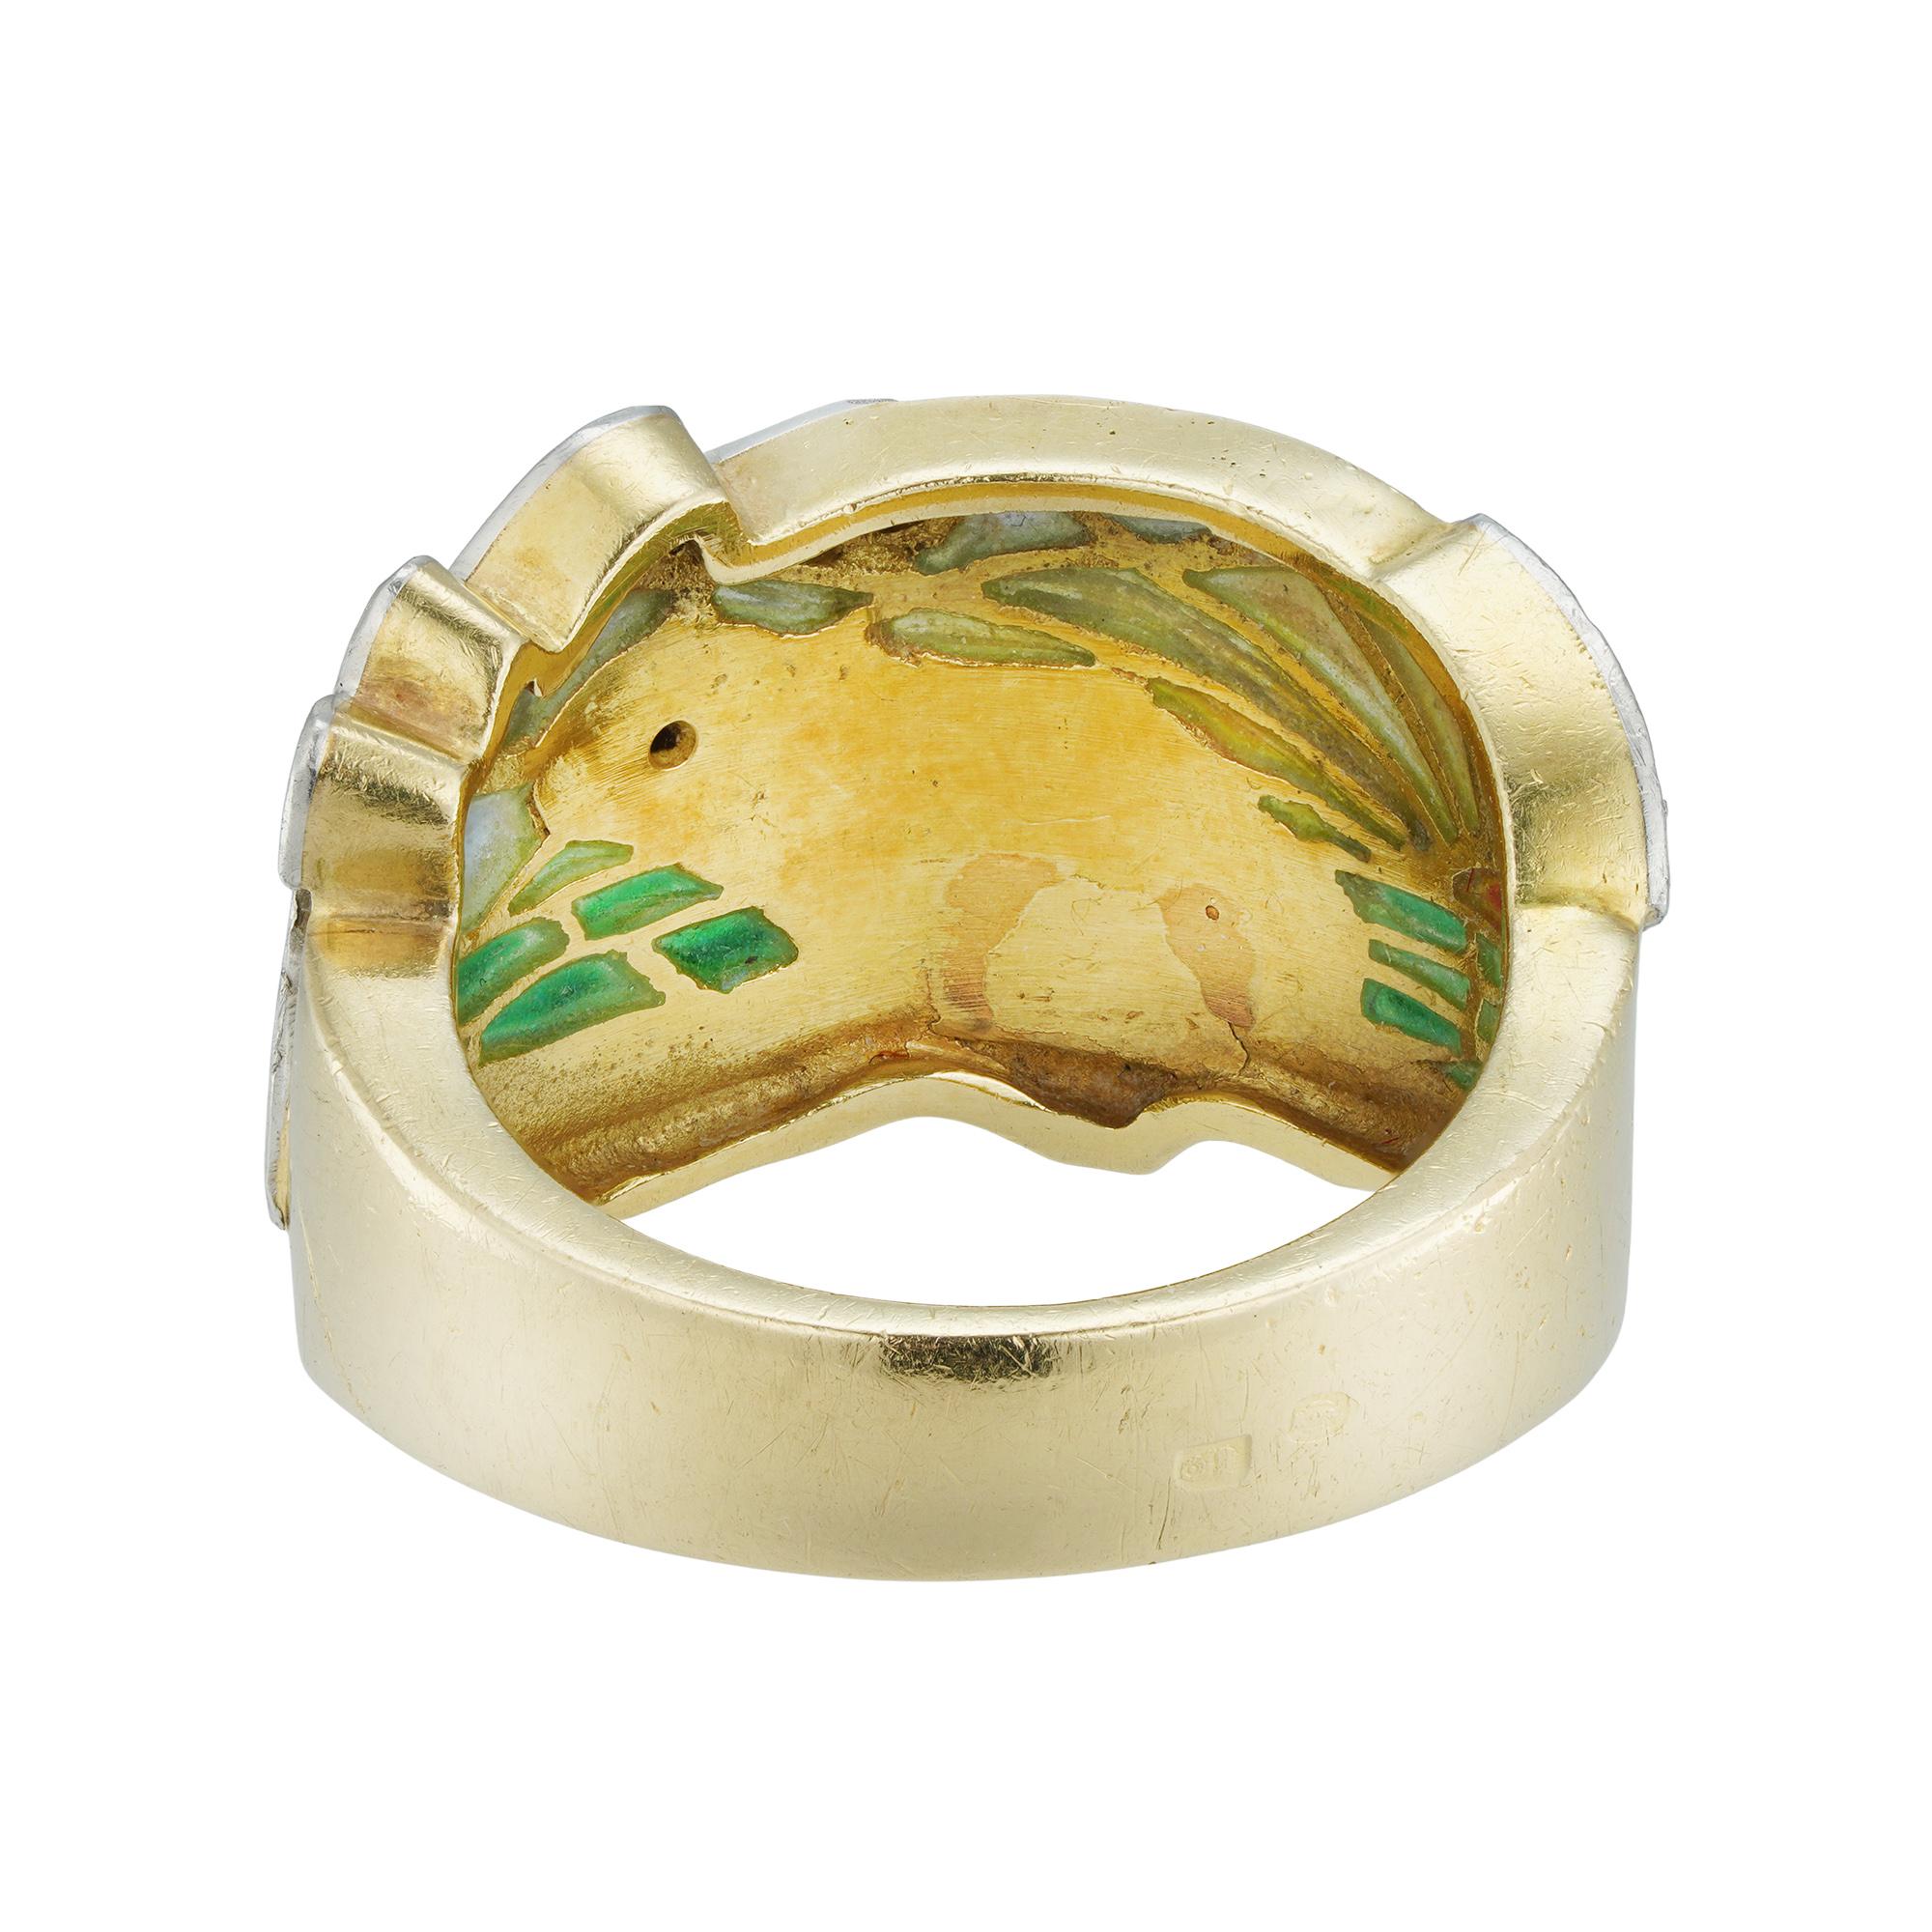 Brilliant Cut Art Nouveau Enamel Ring by Marsiera For Sale